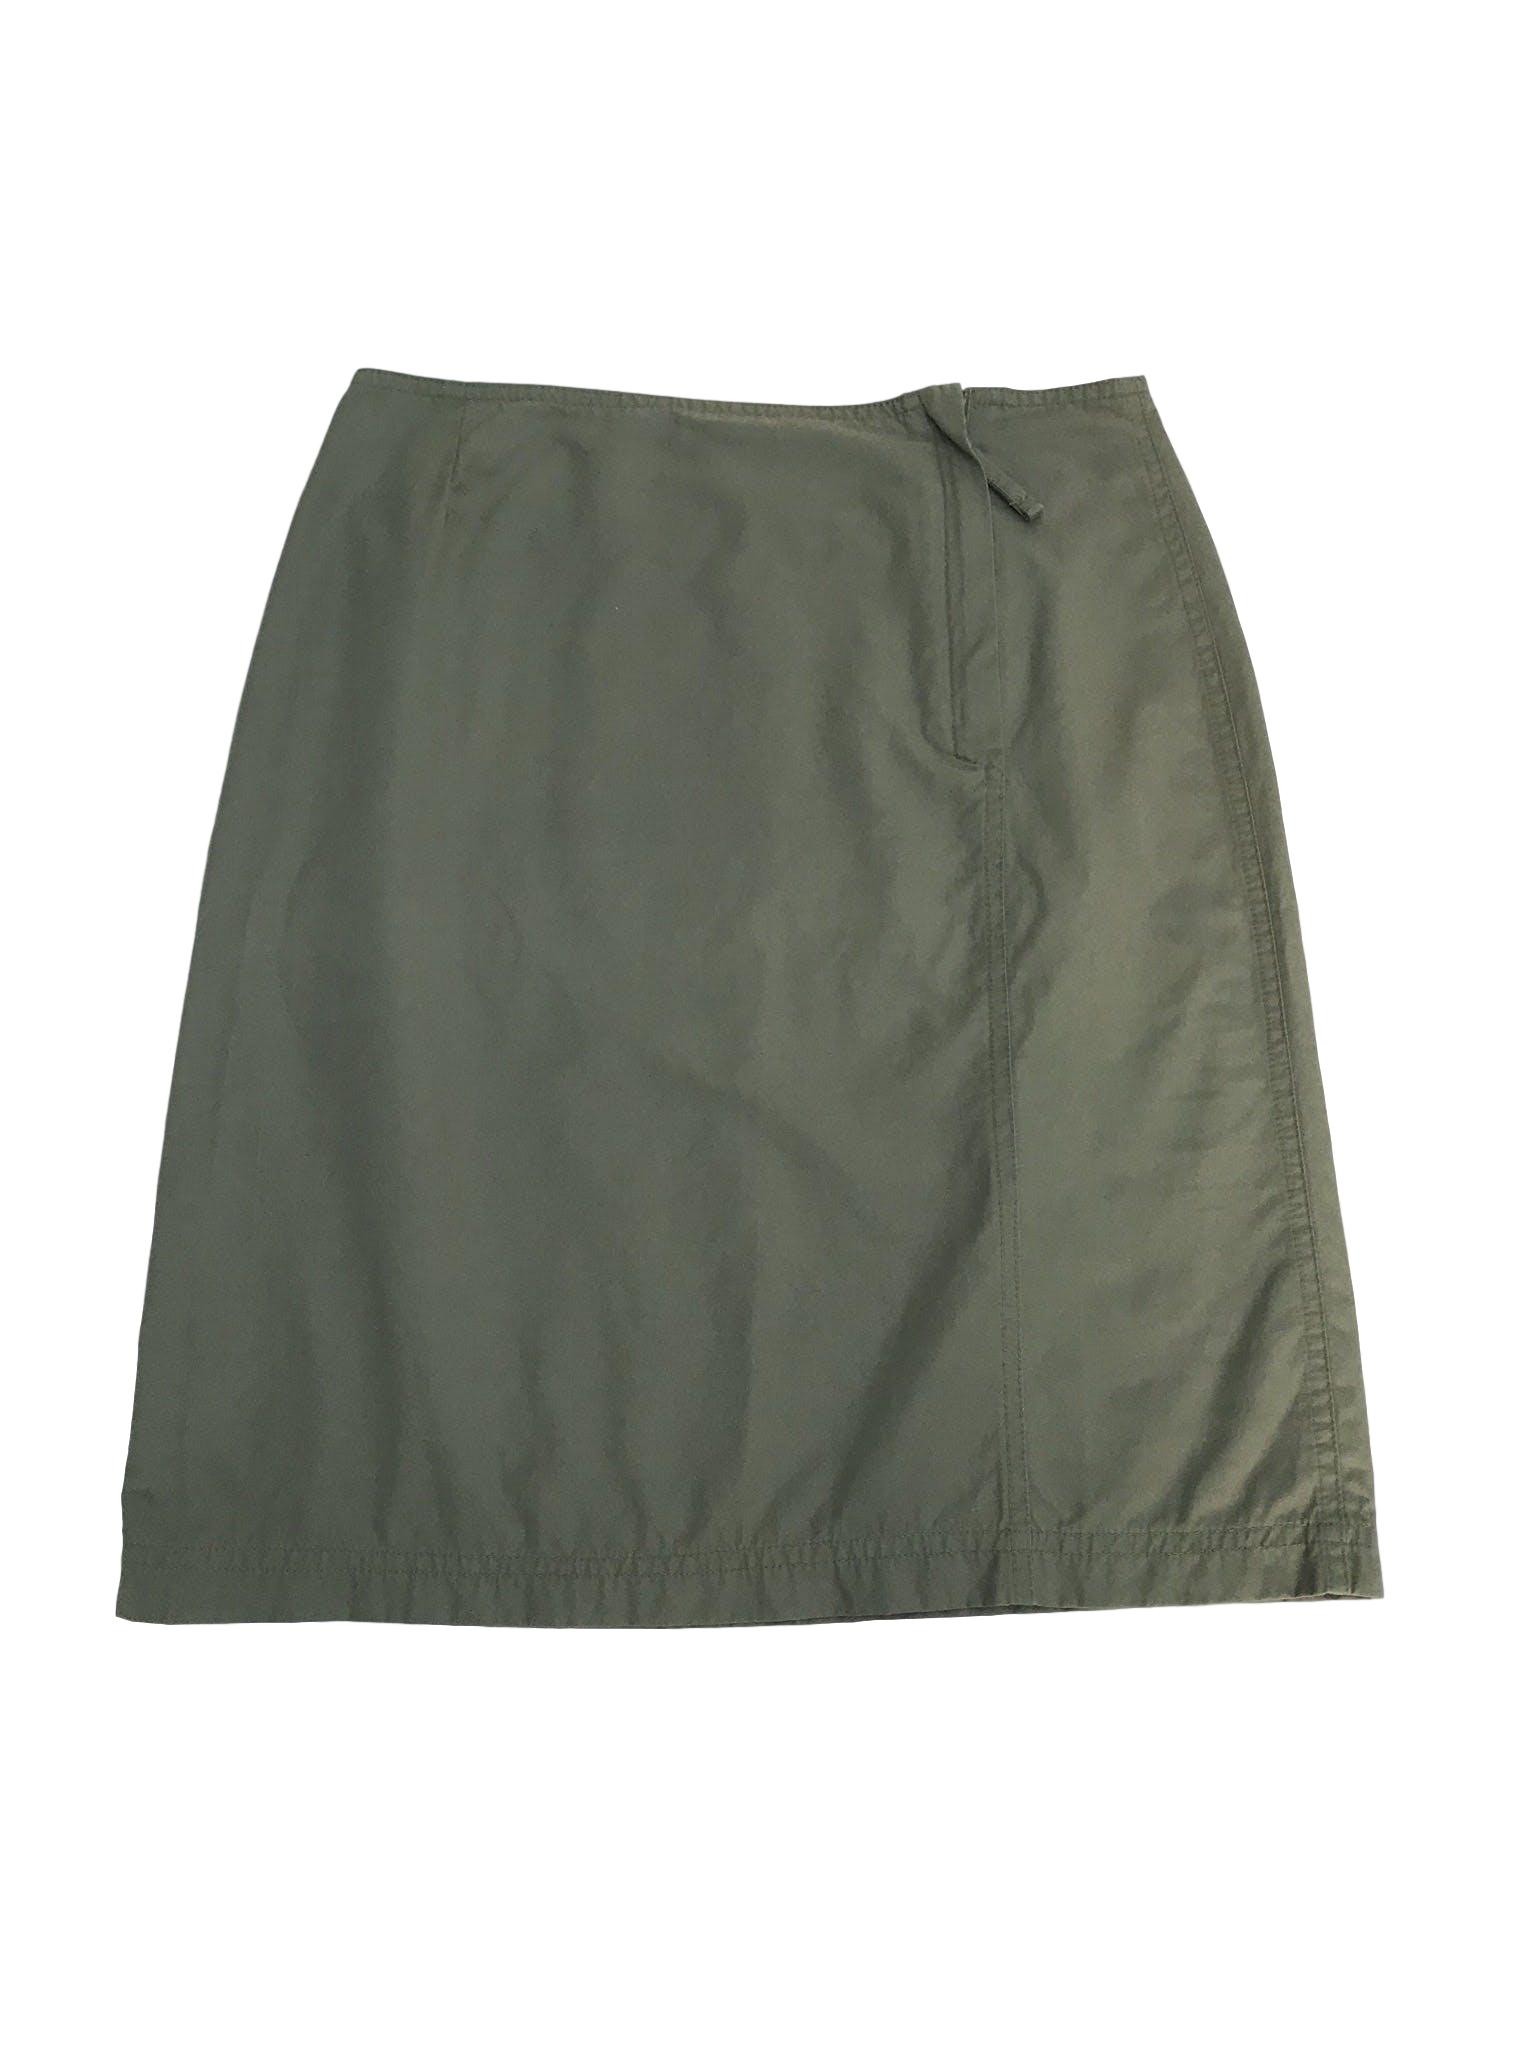 Falda verde tipo taslán, cierre lateral y bolsillo posterior. Estilo outdoor super cool. Pretina76cm Largo 55cm 